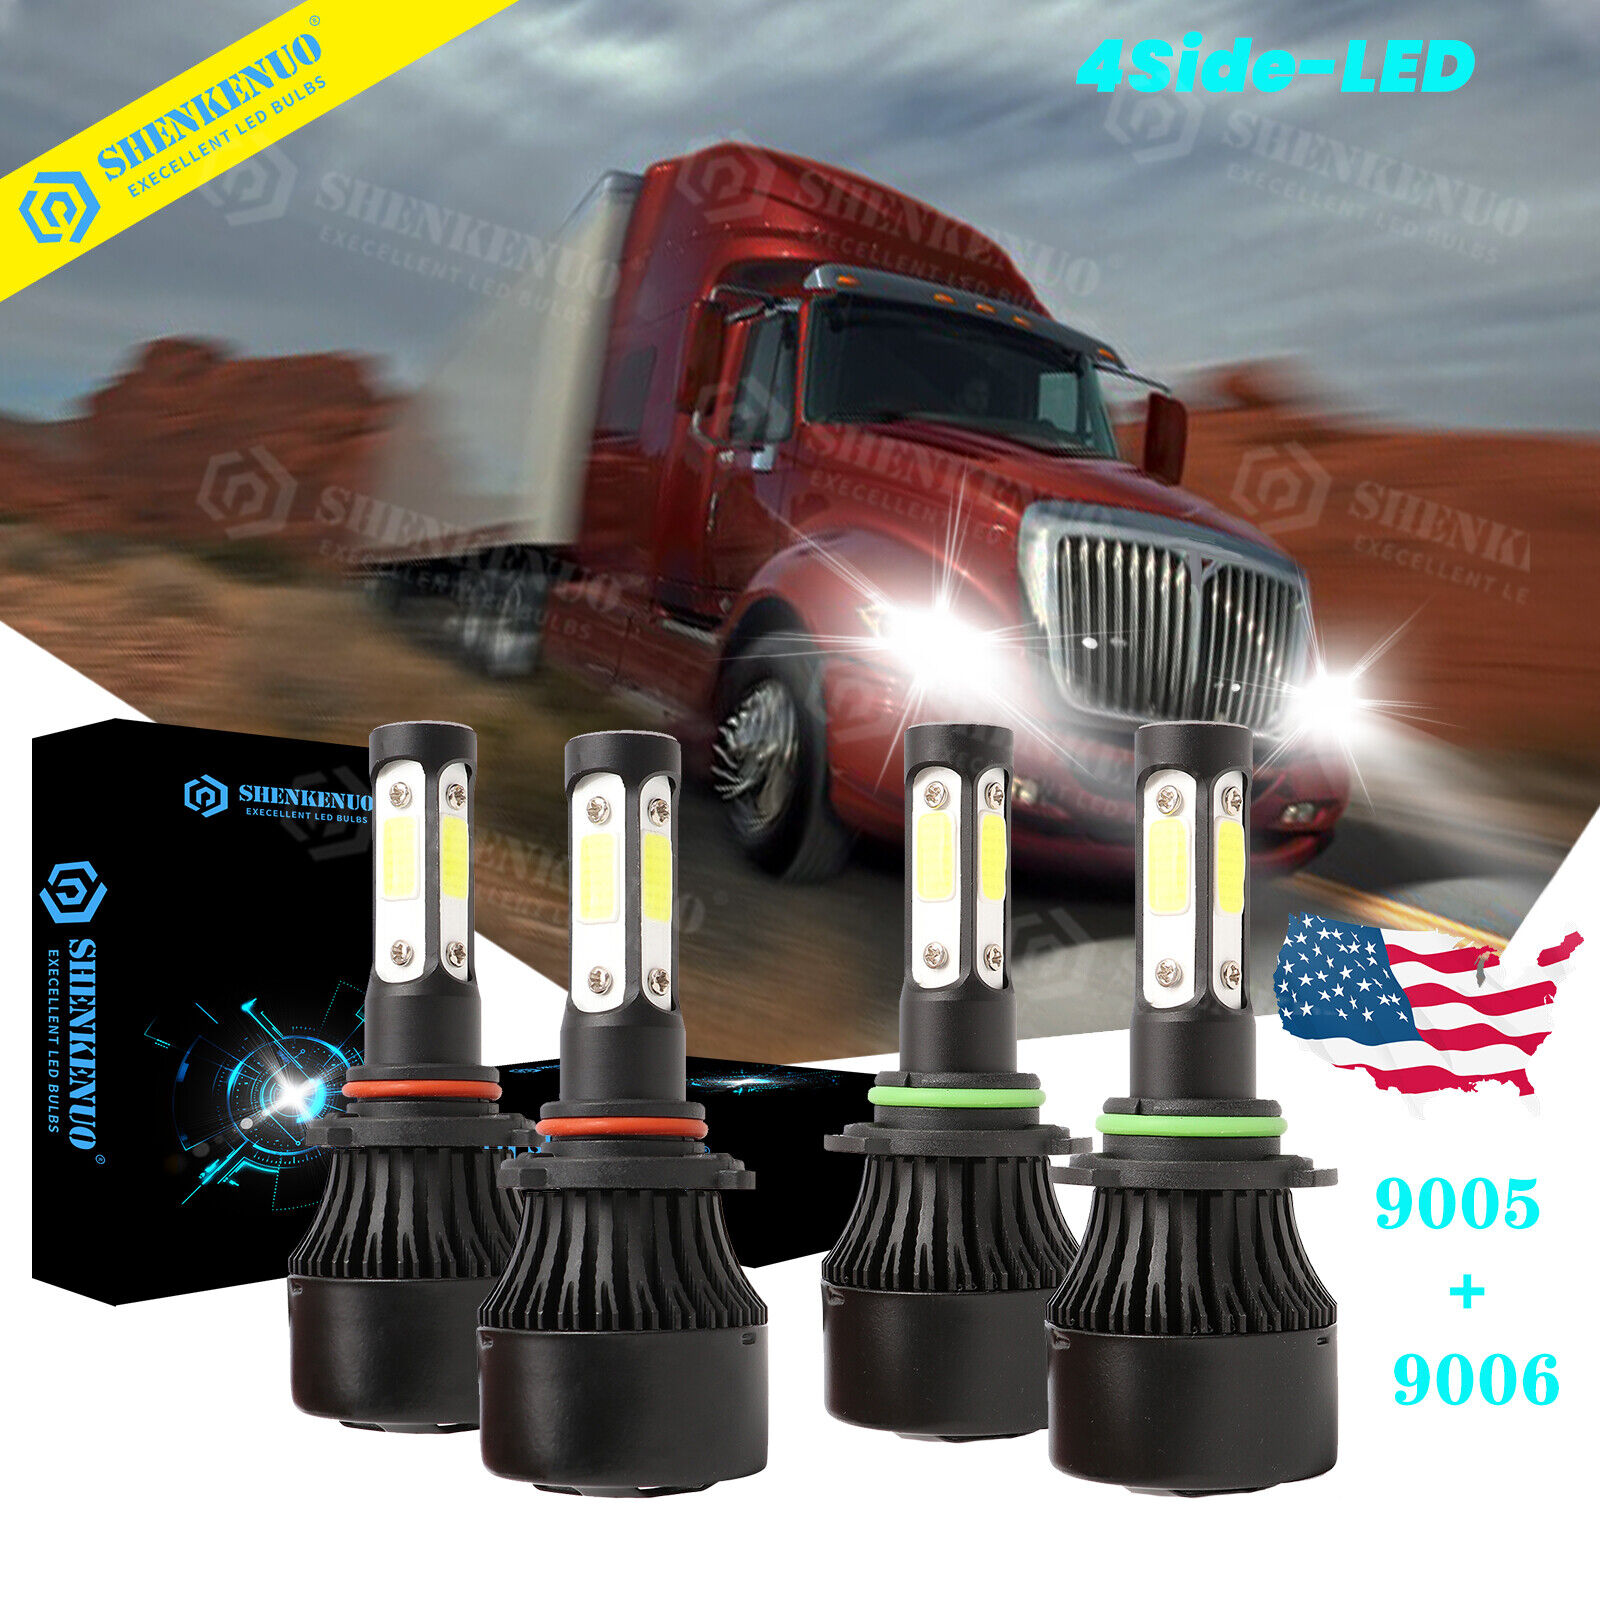 4PC 4Side LED Headlight Bulbs For International Truck Pro Star Prostar 2008-2016